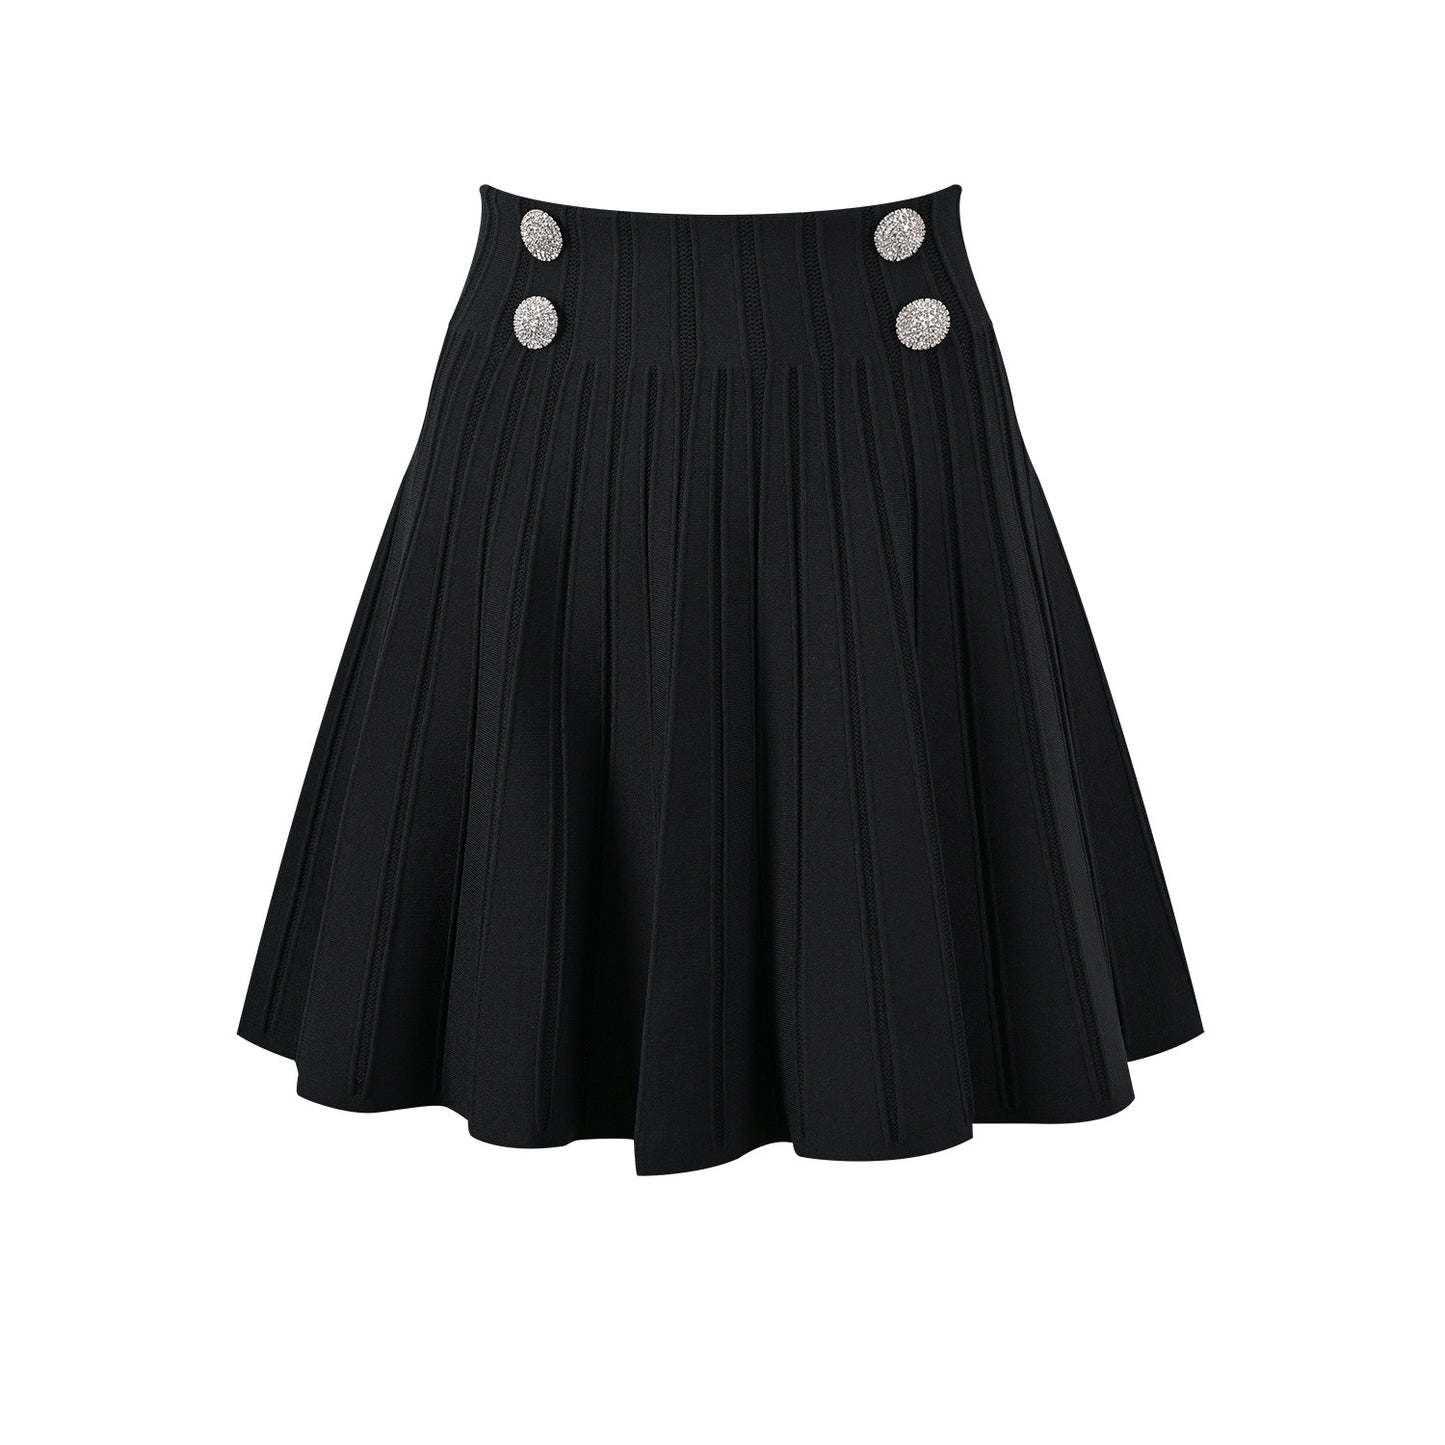 Elasticated waist skirt